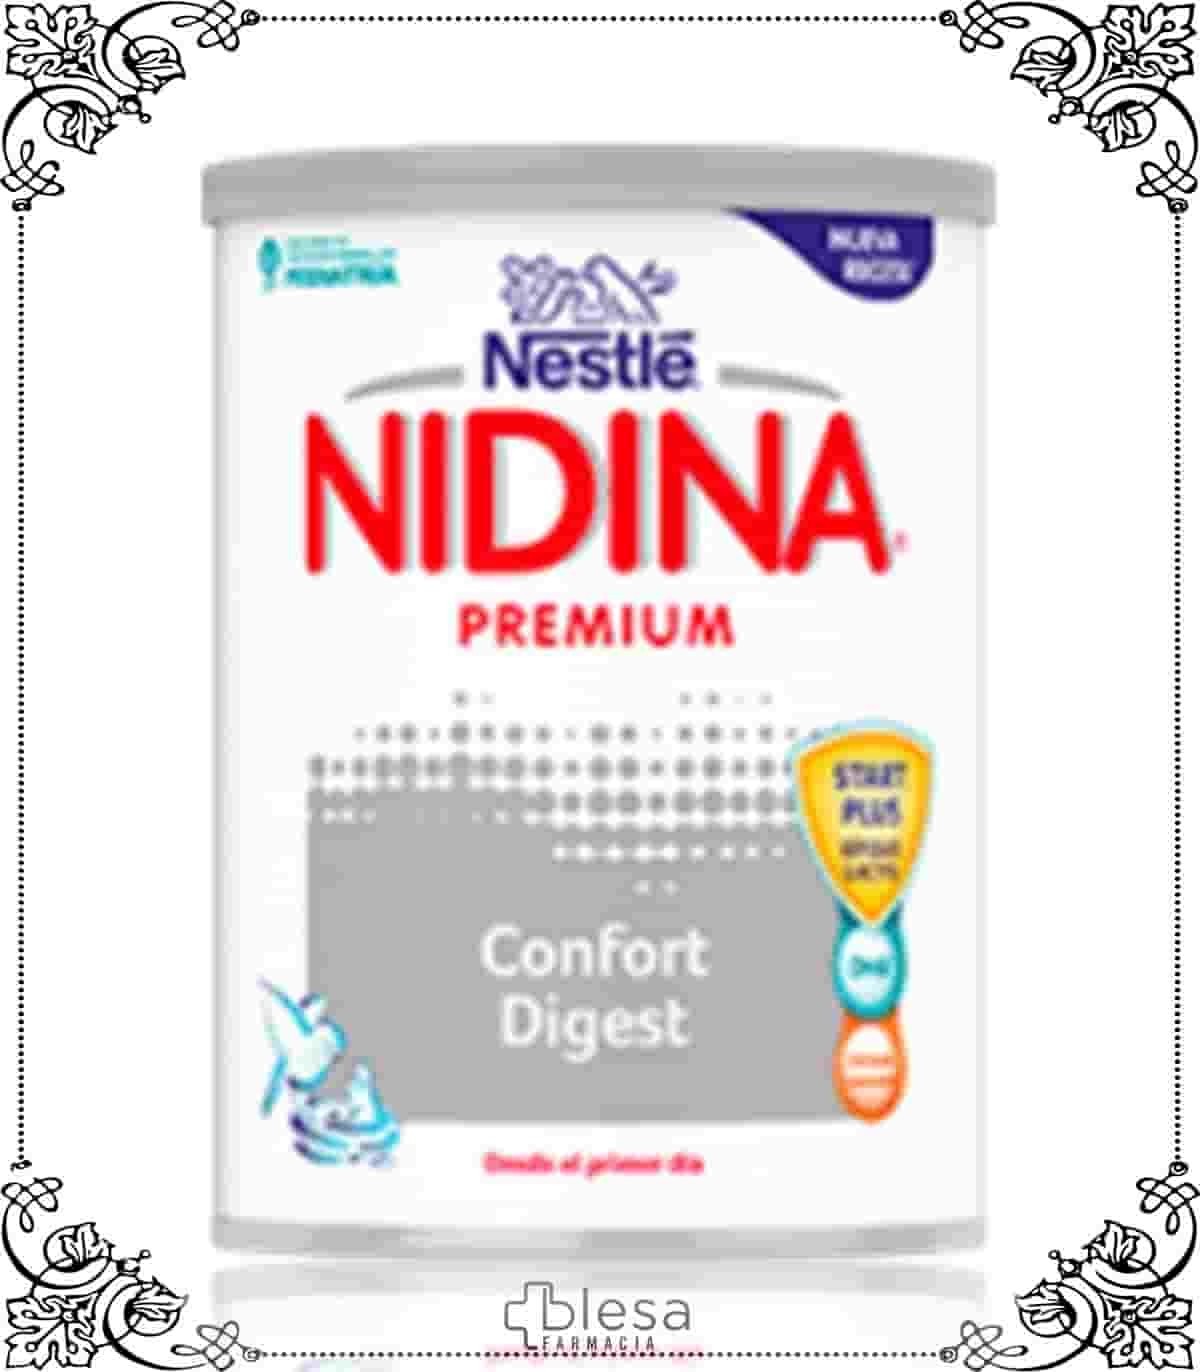 Nestlé Leche de Inicio Nidina 1 Premium